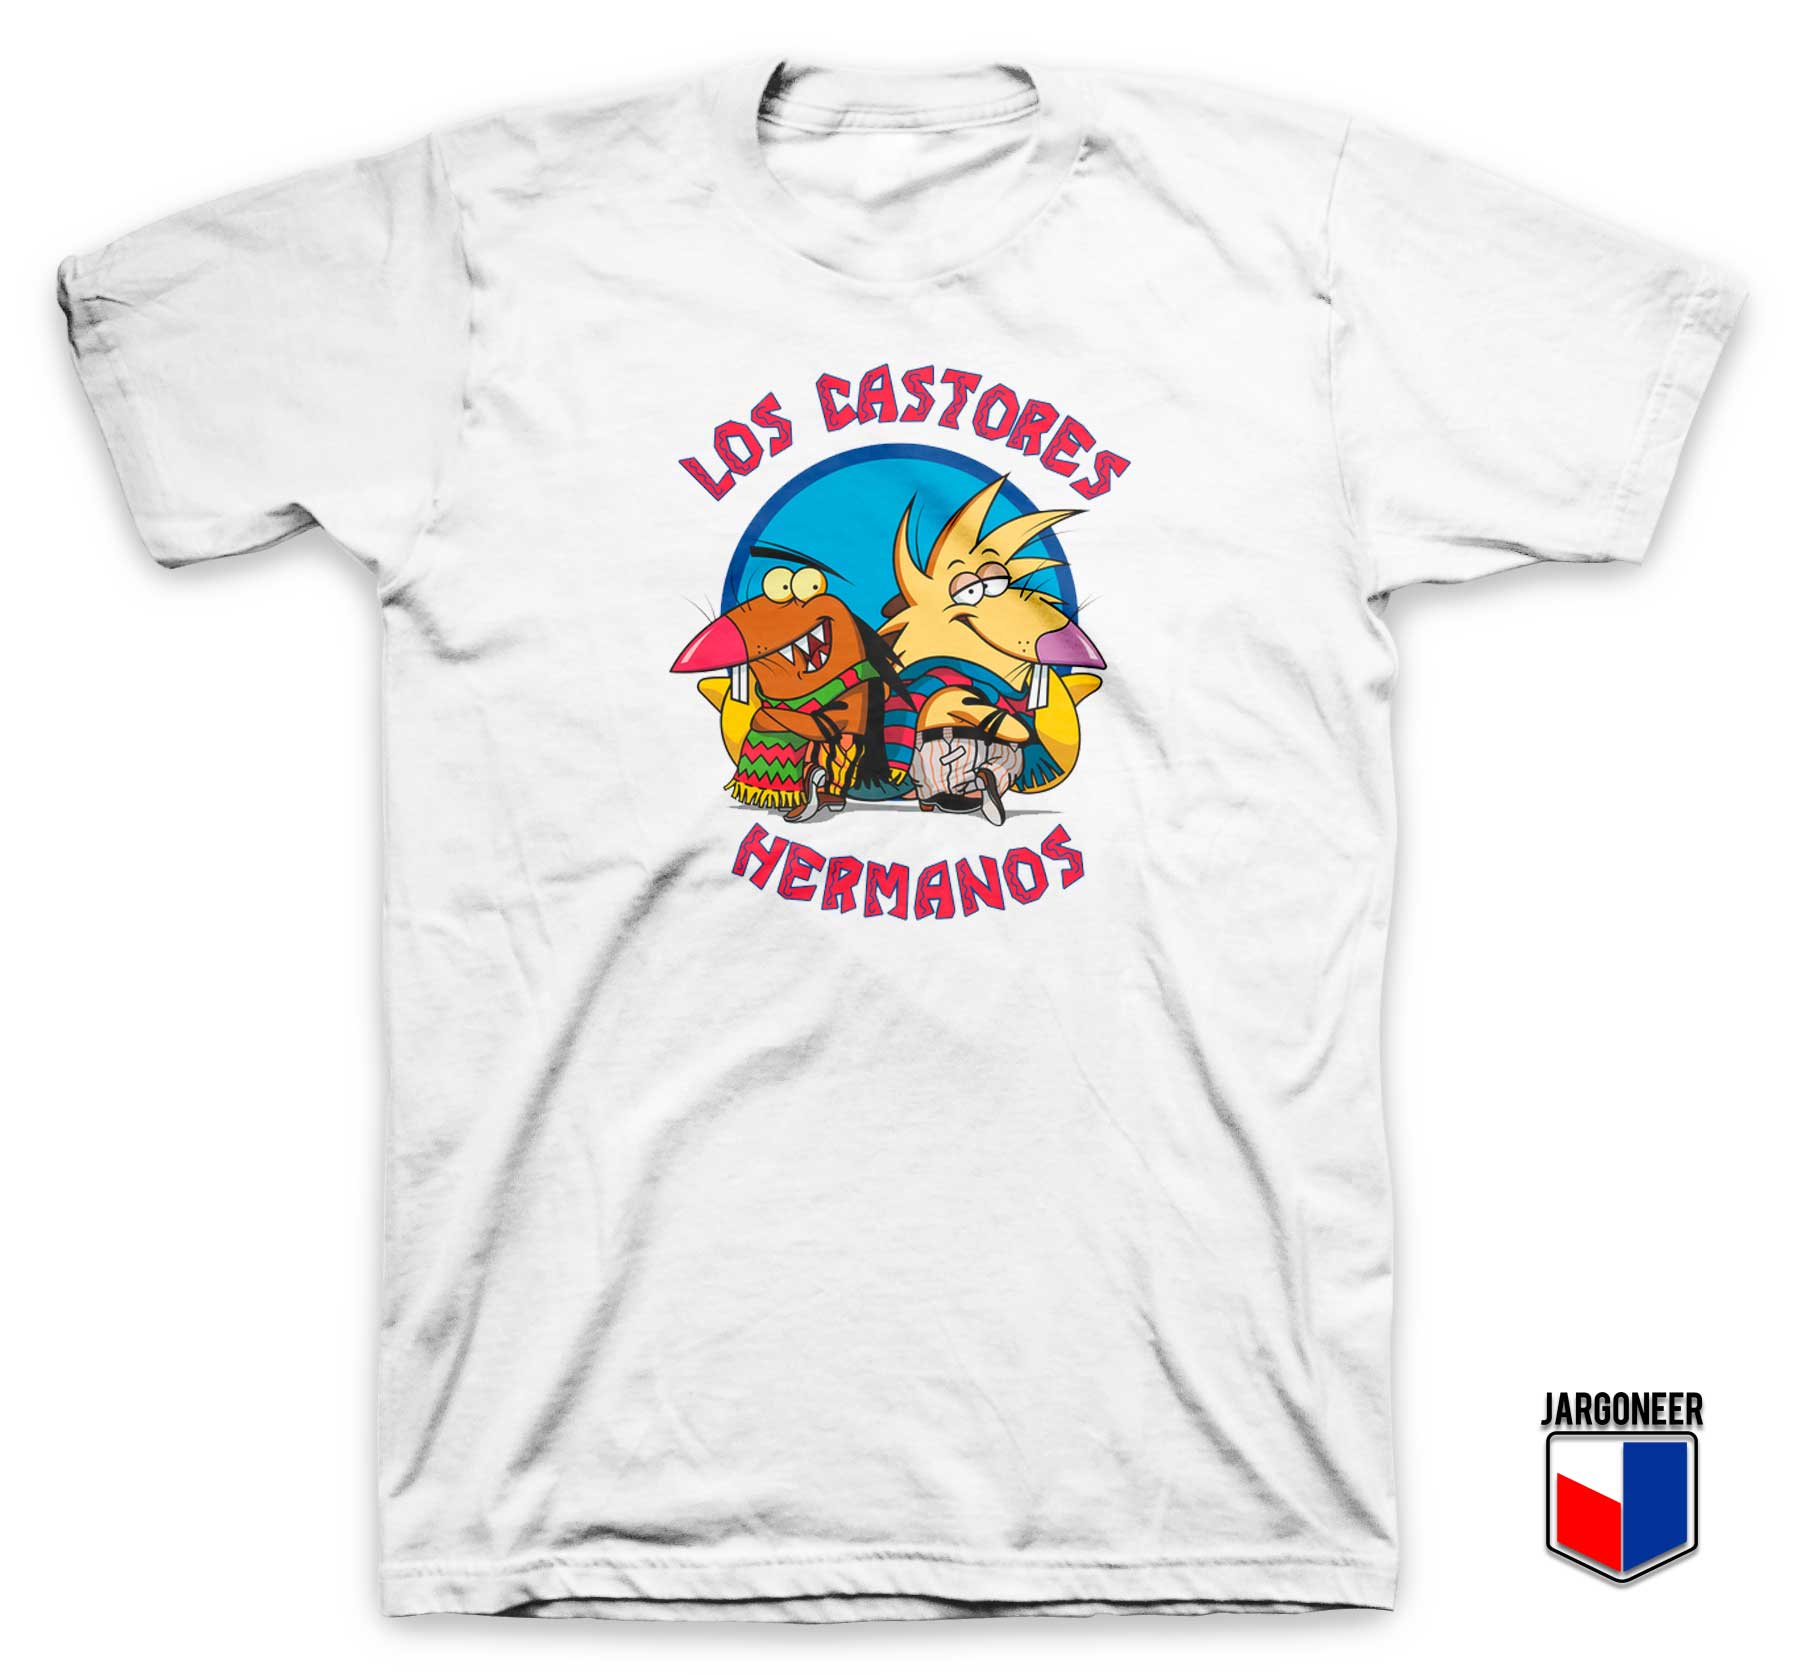 Los Castores Hermanos T Shirt - Shop Unique Graphic Cool Shirt Designs